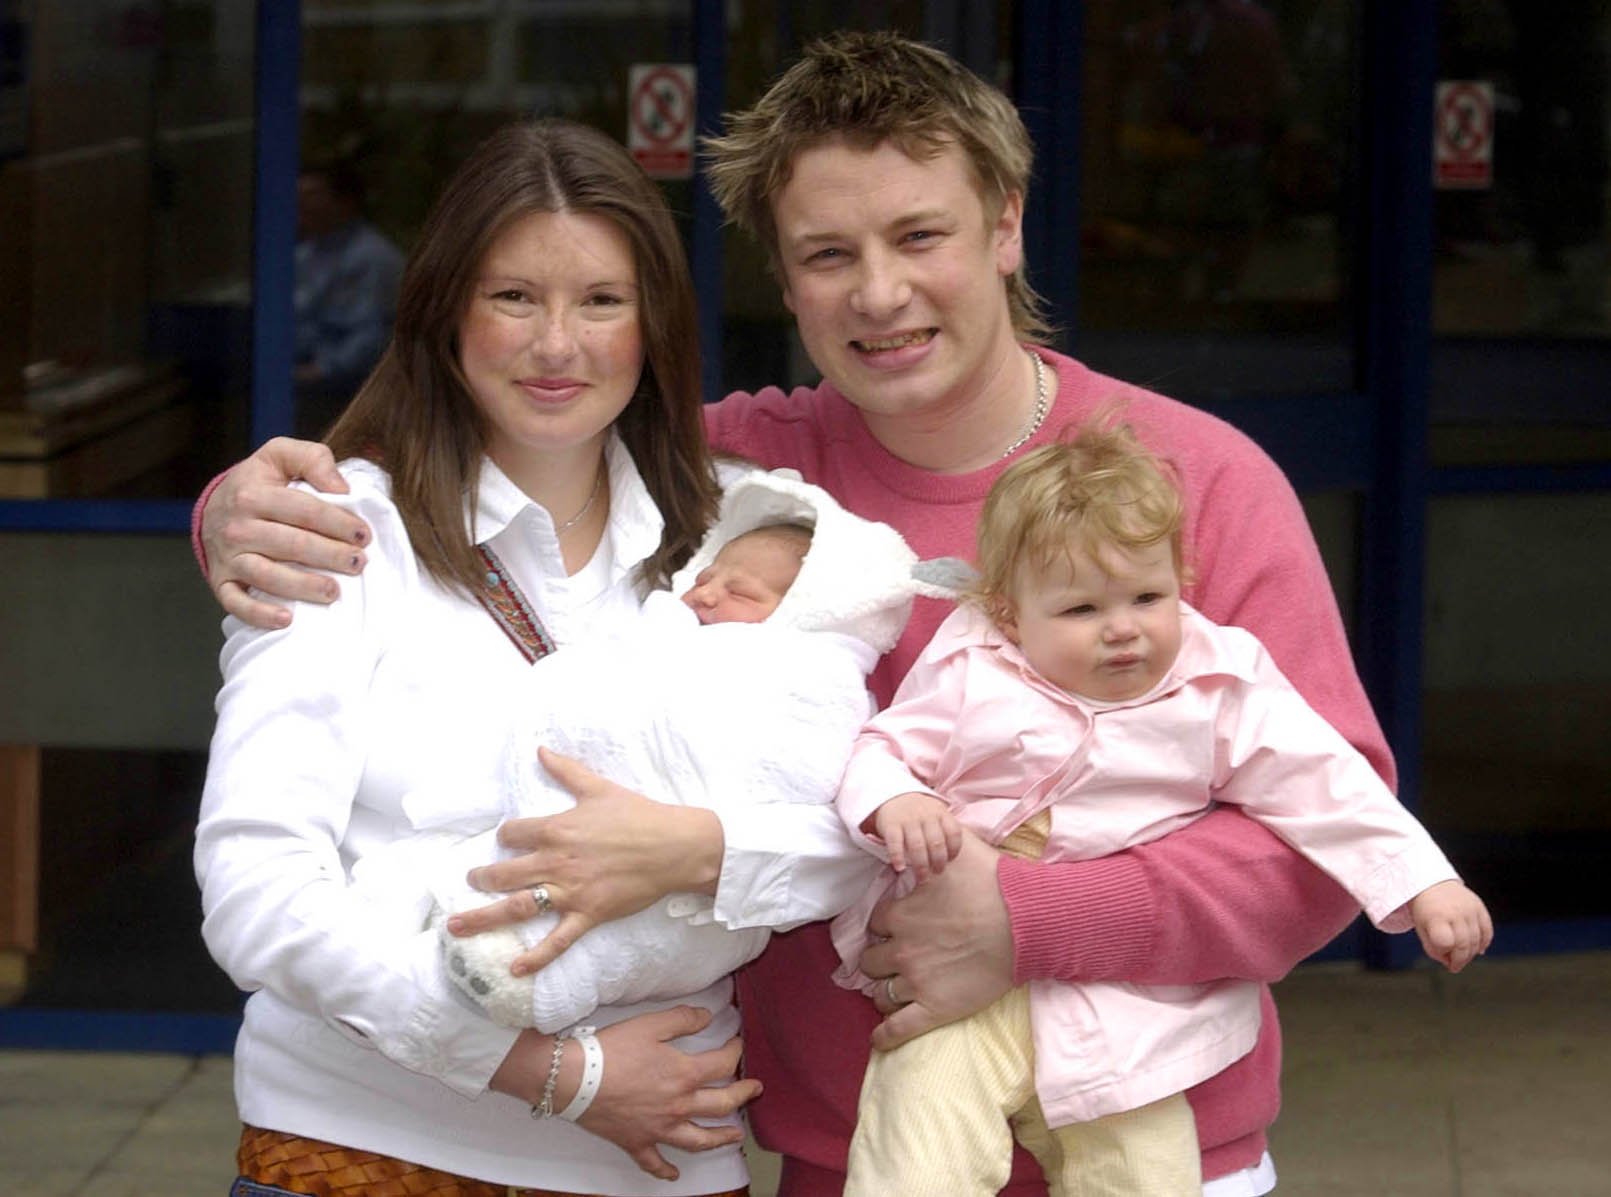 Jamie und Jools im Jahr 2003 mit ihren Töchtern Daisy Boo und Poppy Honey